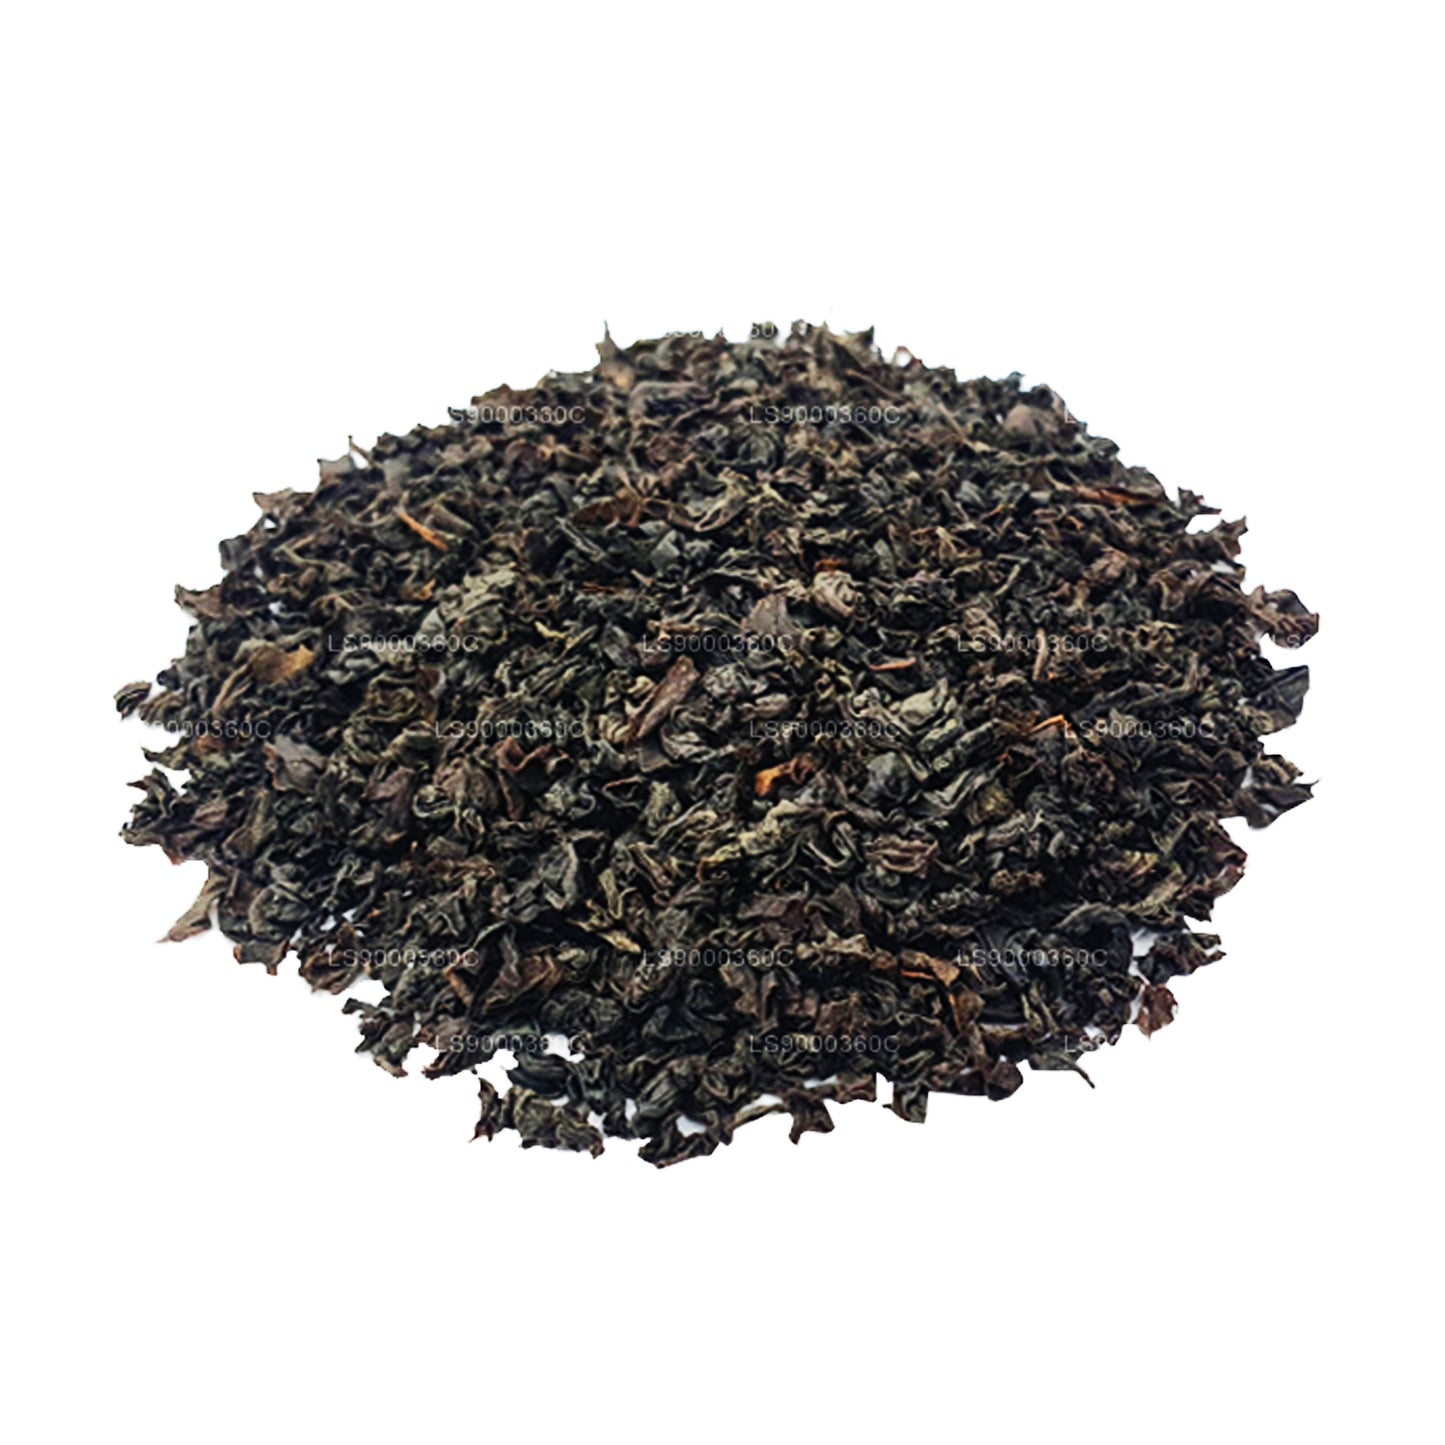 Лакпура Одиночное поместье (Думбагасталава) Цейлонский черный чай класса PEKOE (100 г)